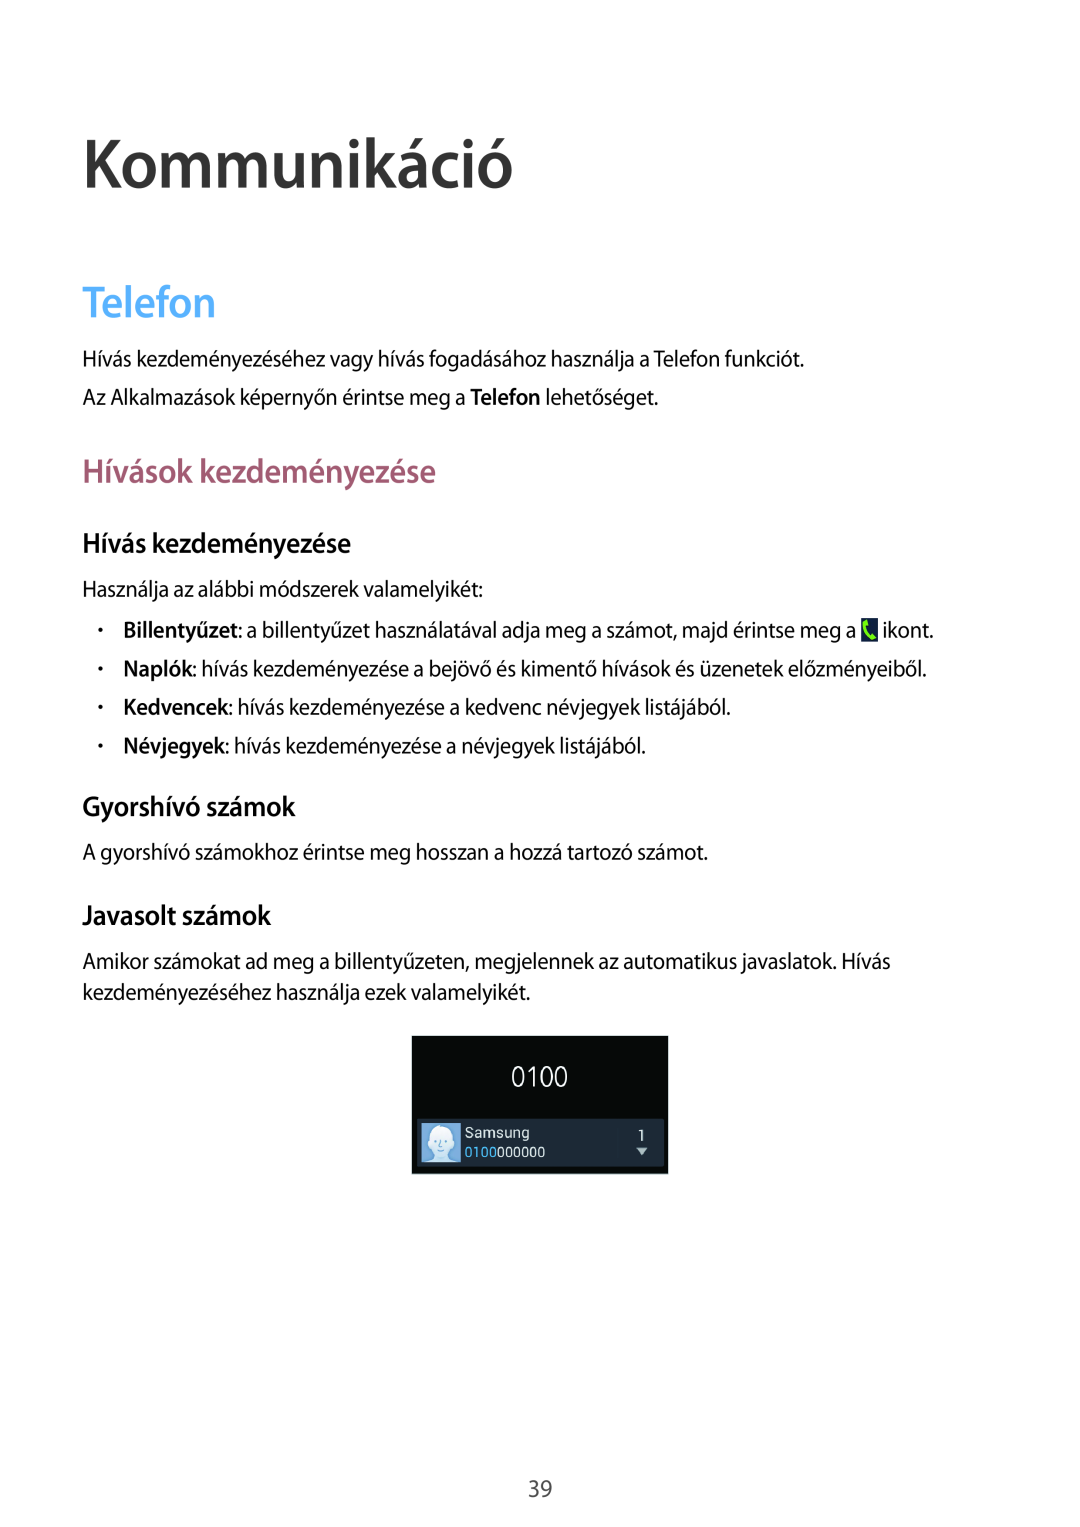 Samsung SM-G3815ZBAVDC manual Kommunikáció, Telefon, Hívások kezdeményezése, Hívás kezdeményezése, Gyorshívó számok 